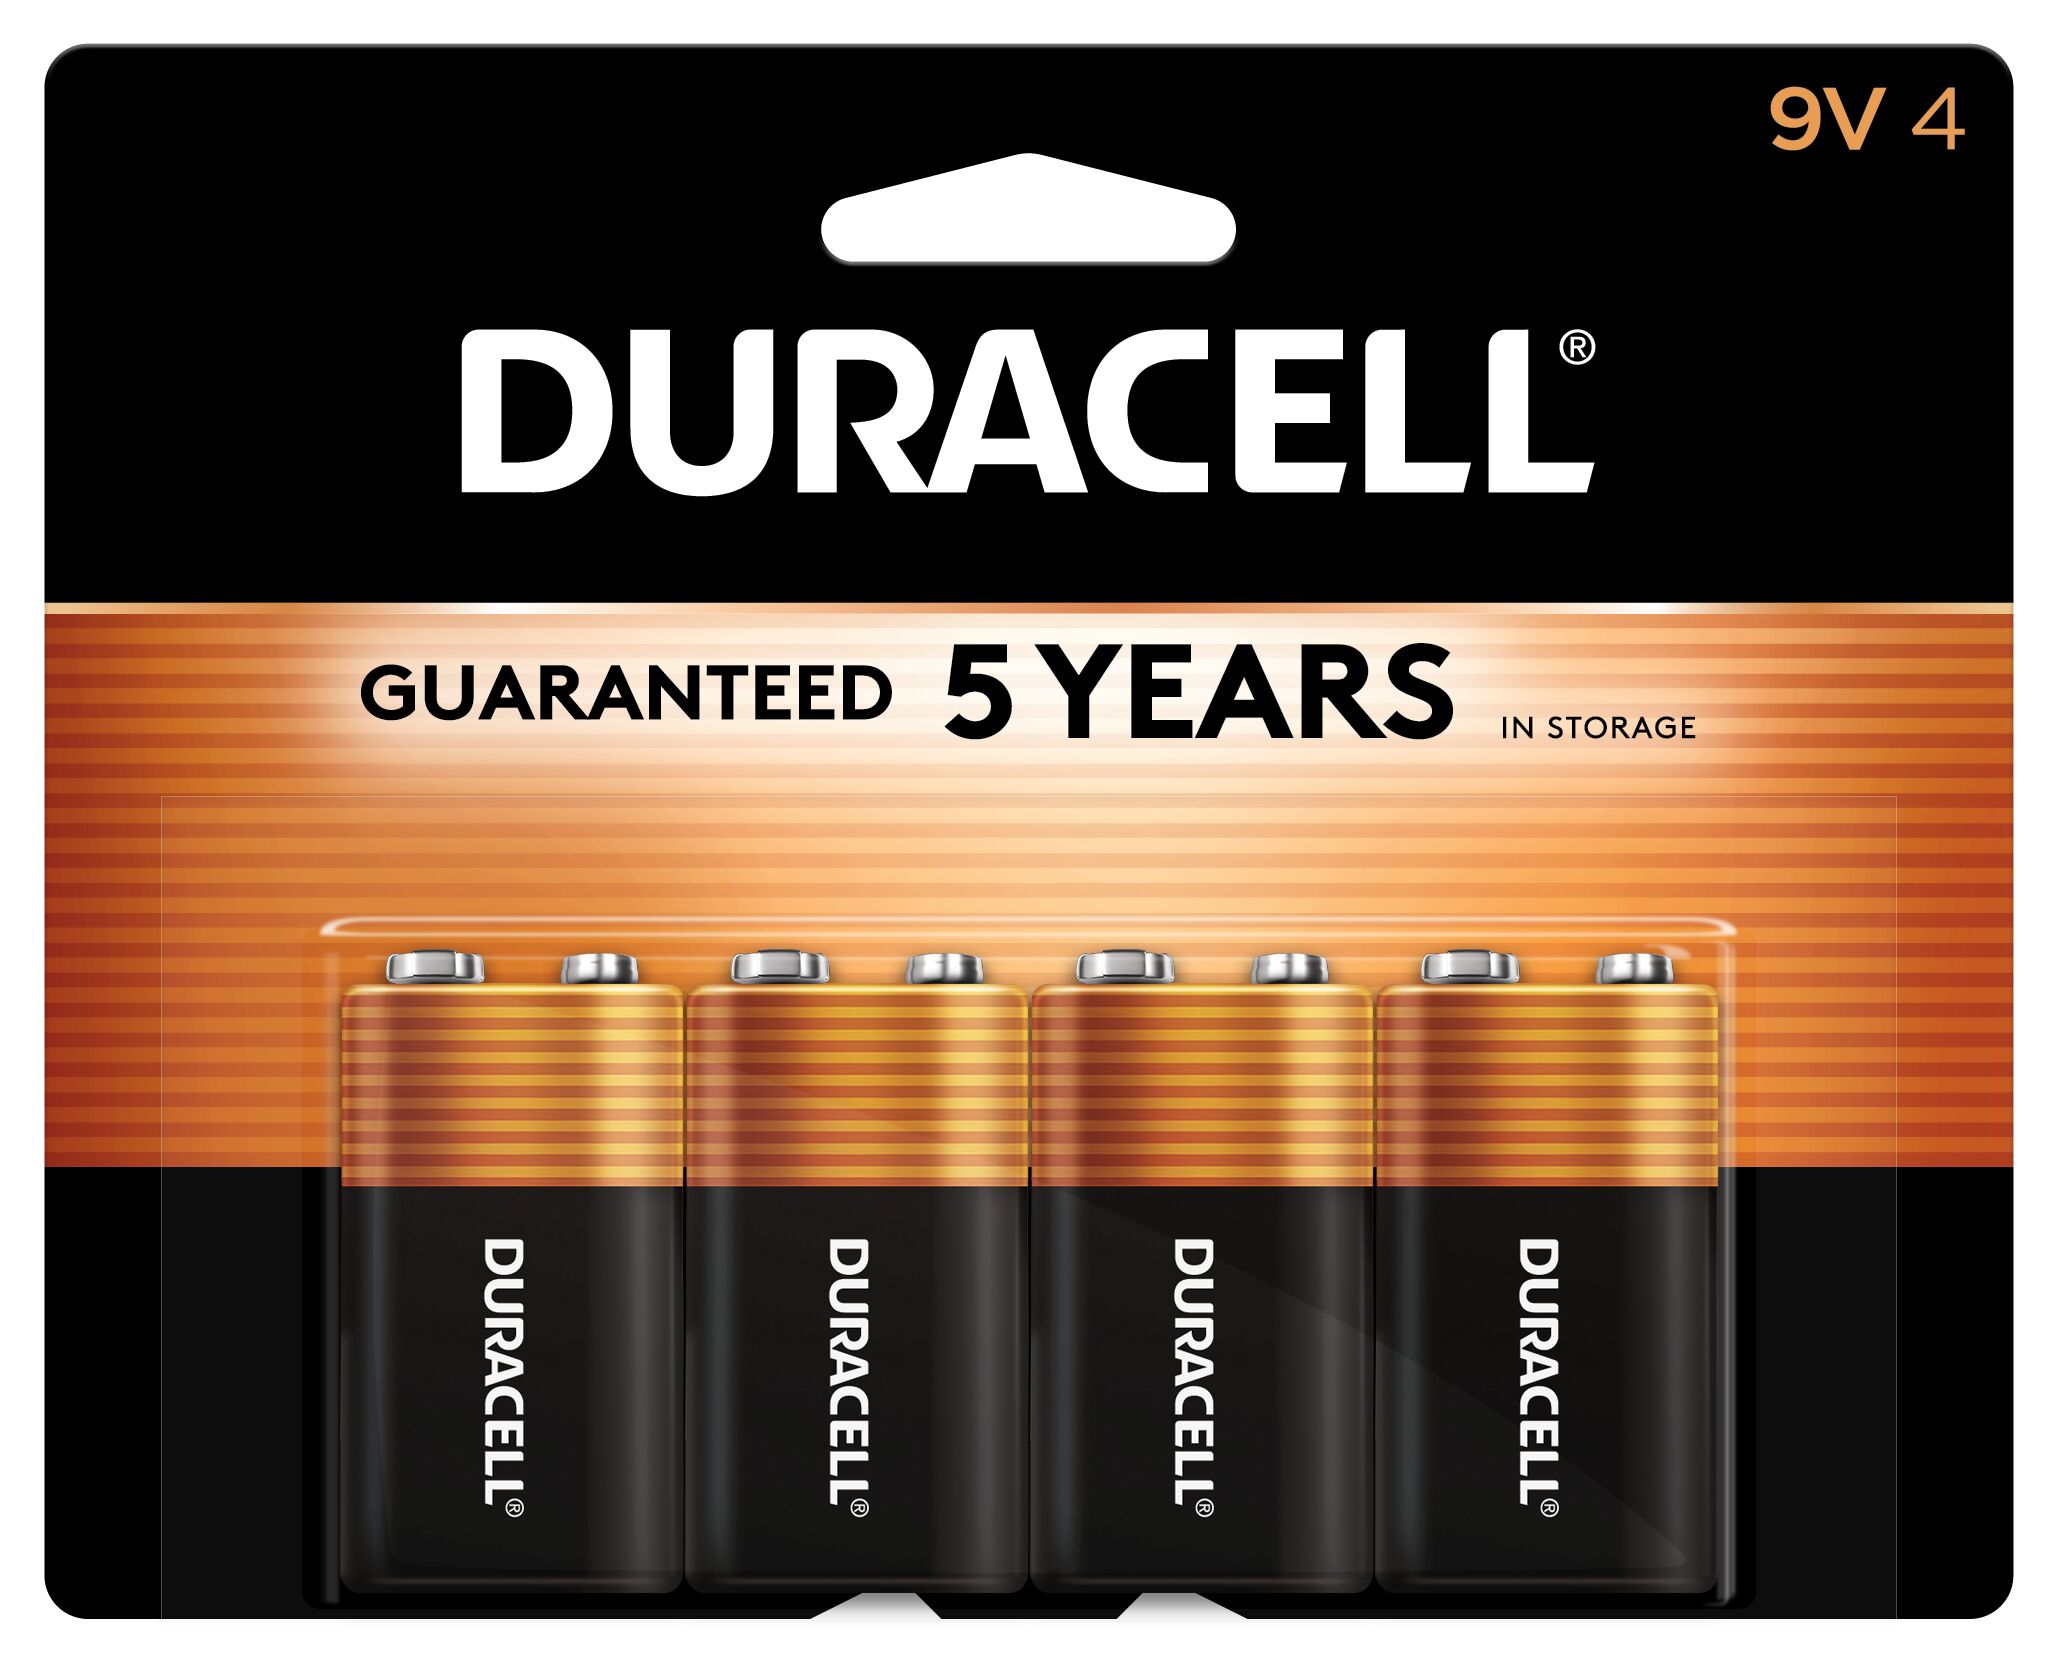 duracell 9v lithium battery